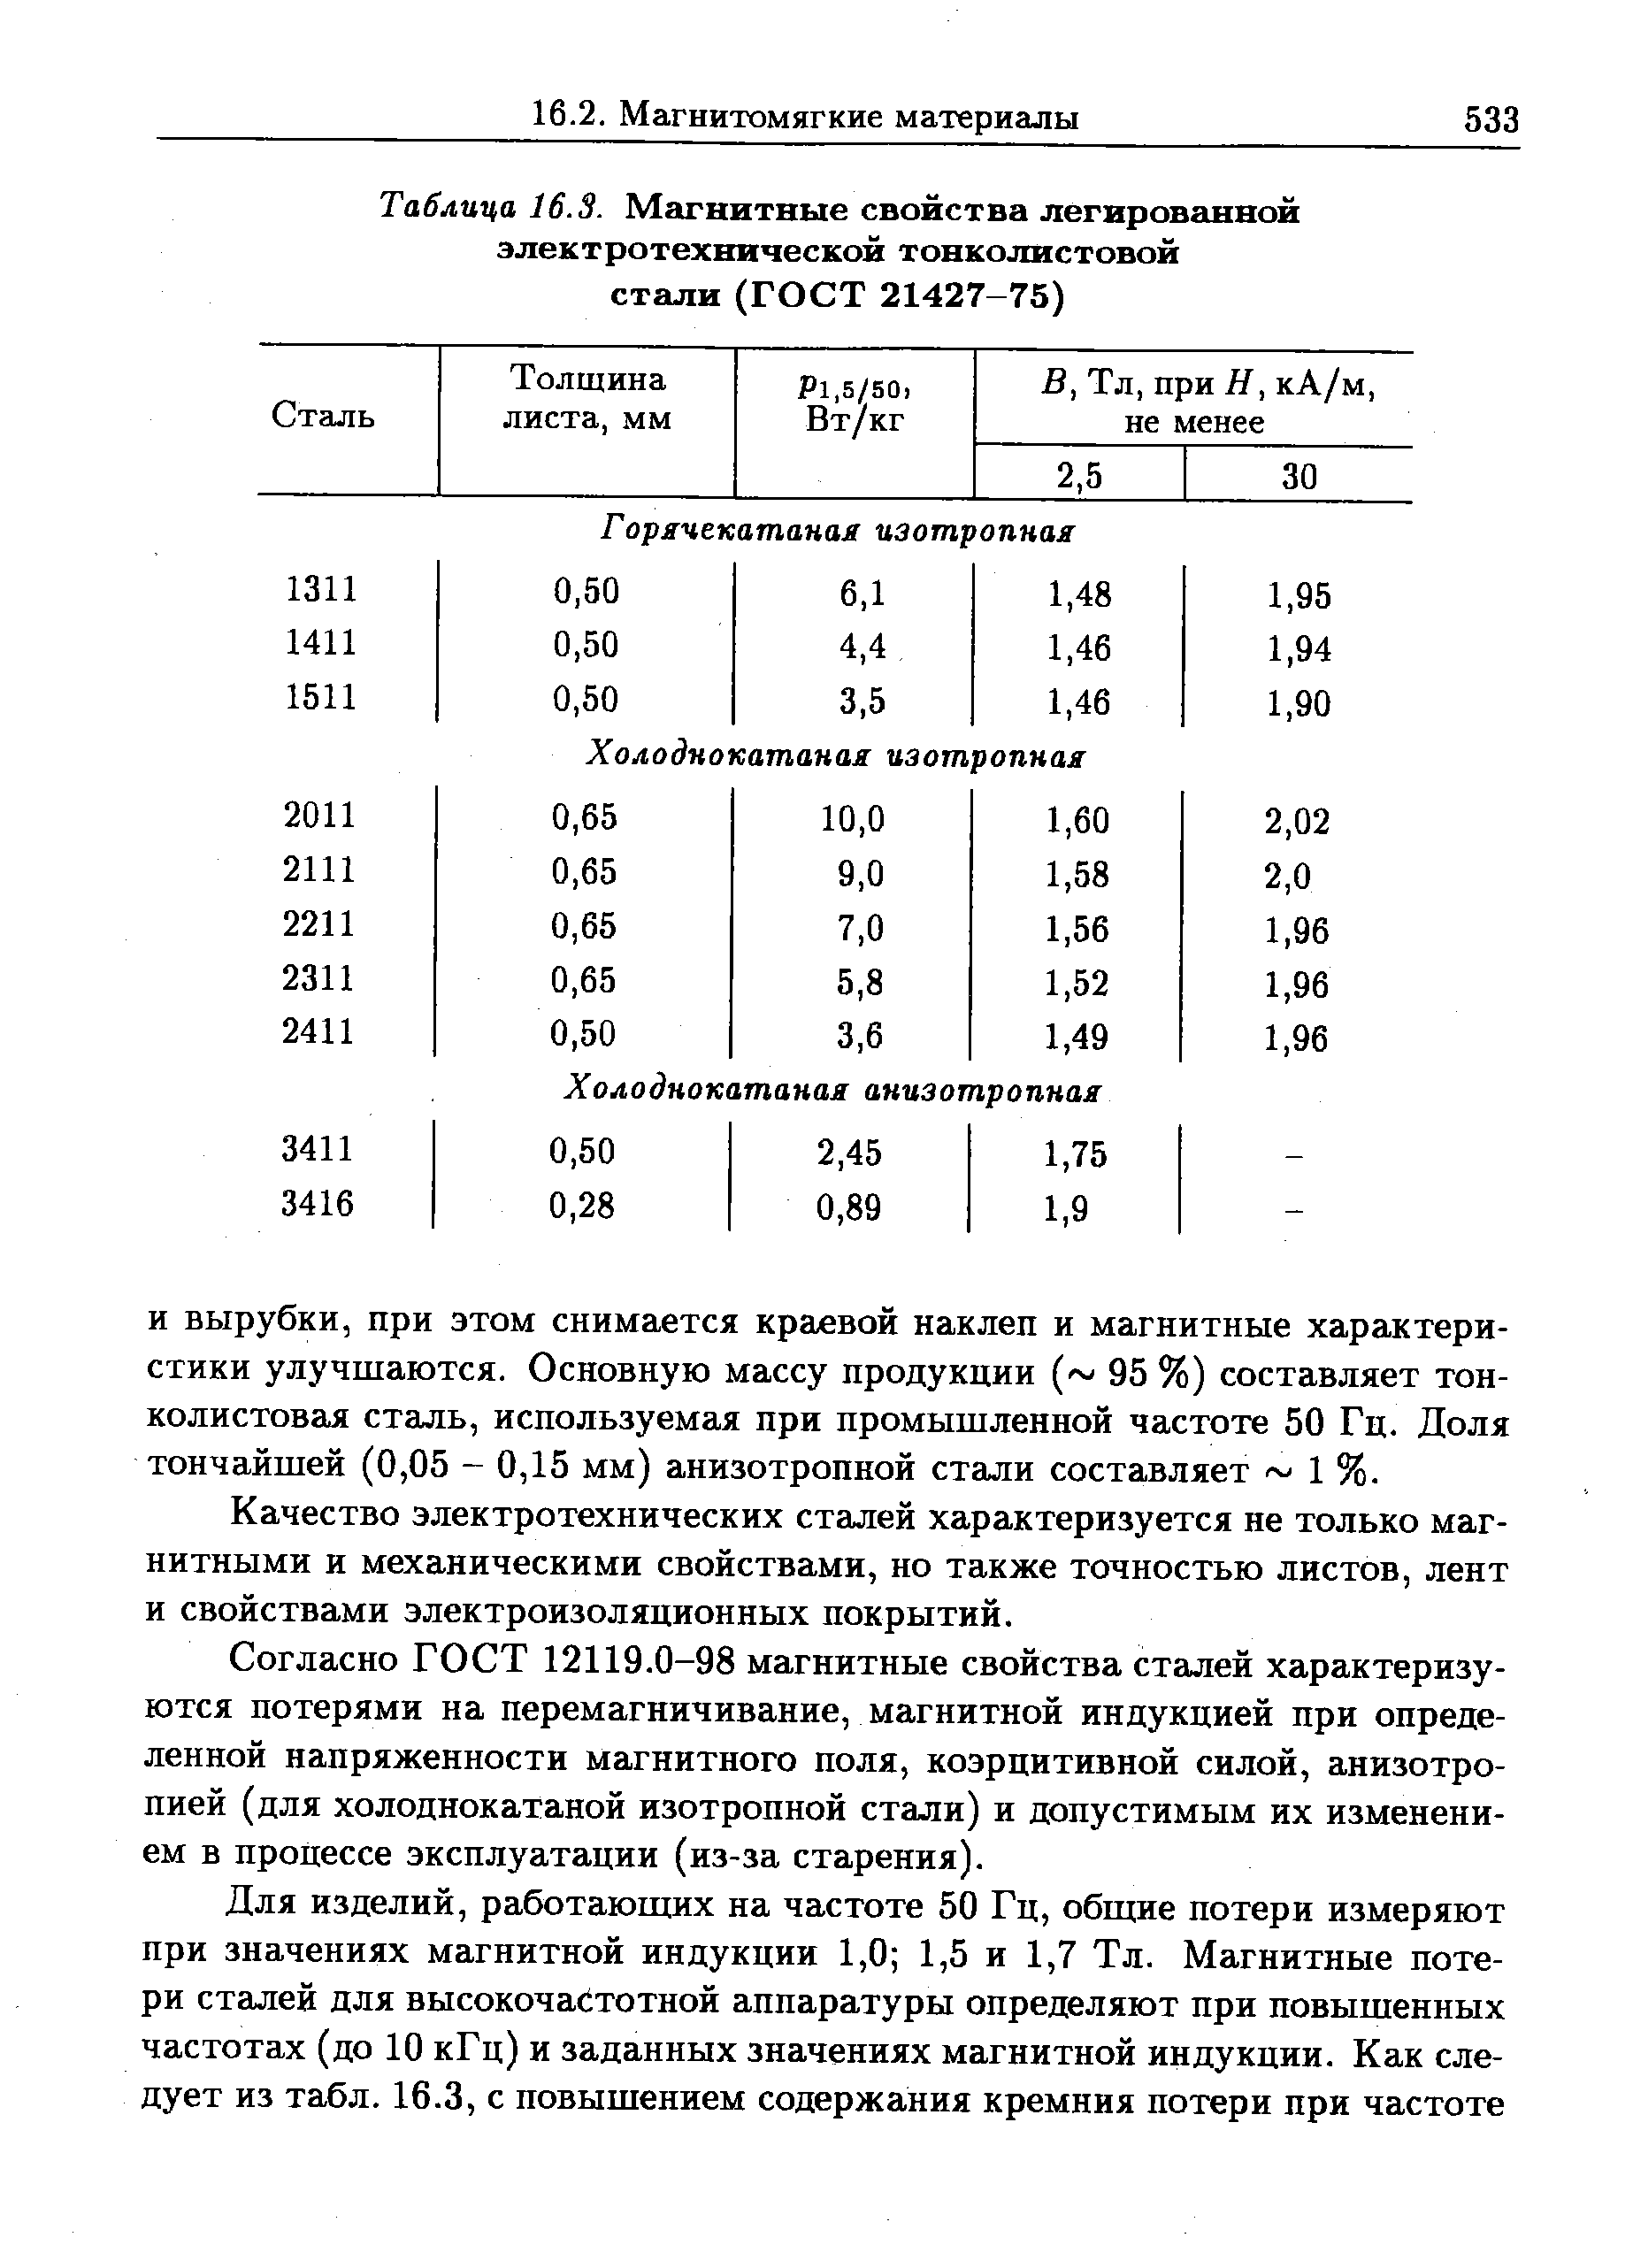 Таблица 16.3. Магнитные свойства легированной электротехнической тонколистовой стали (ГОСТ 21427-75)
